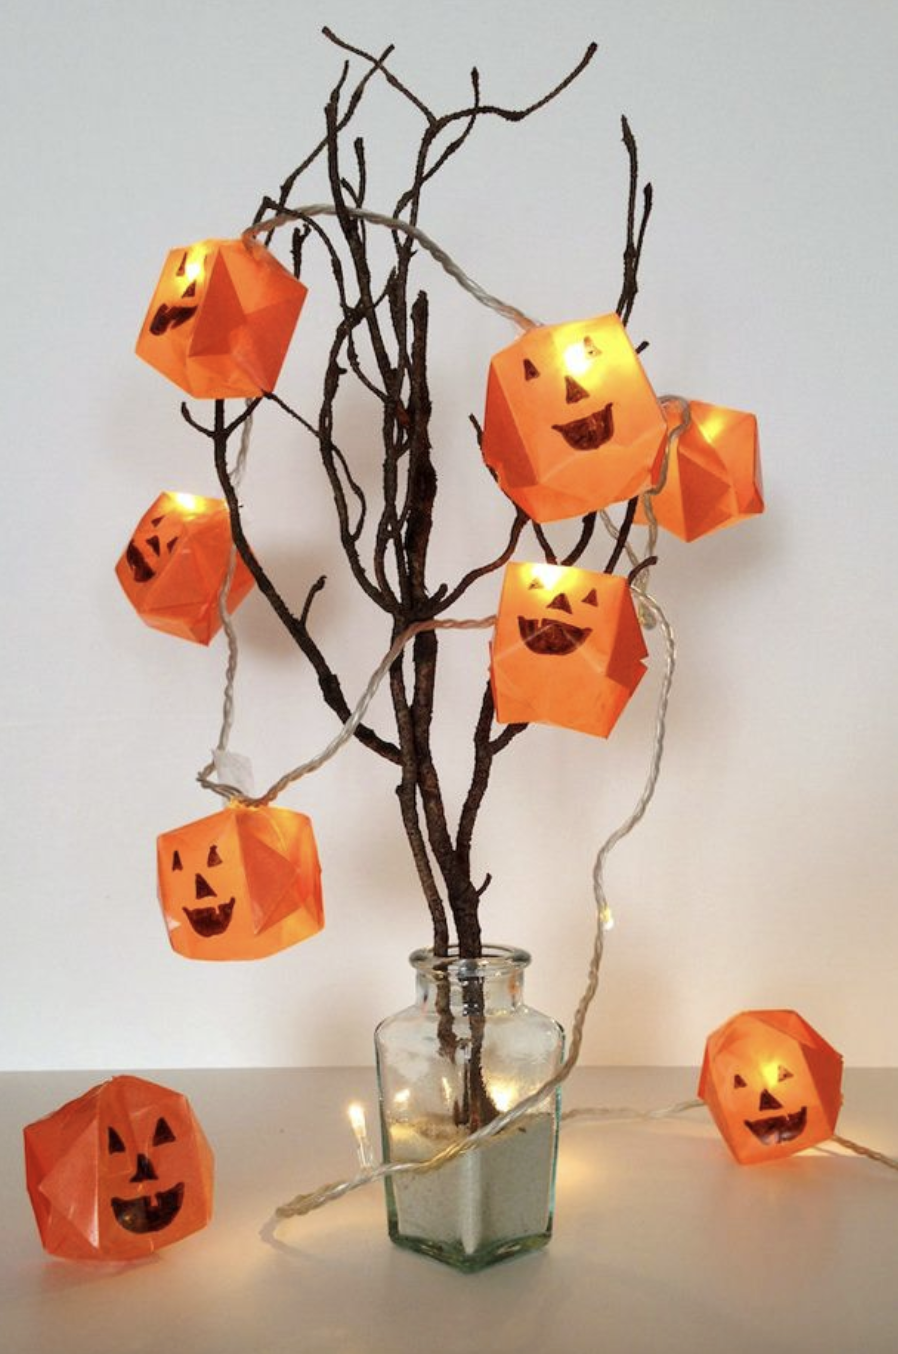 https://hips.hearstapps.com/hmg-prod/images/pumpkin-crafts-for-kids-origami-pumpkin-lights-64e8b8102aff8.png